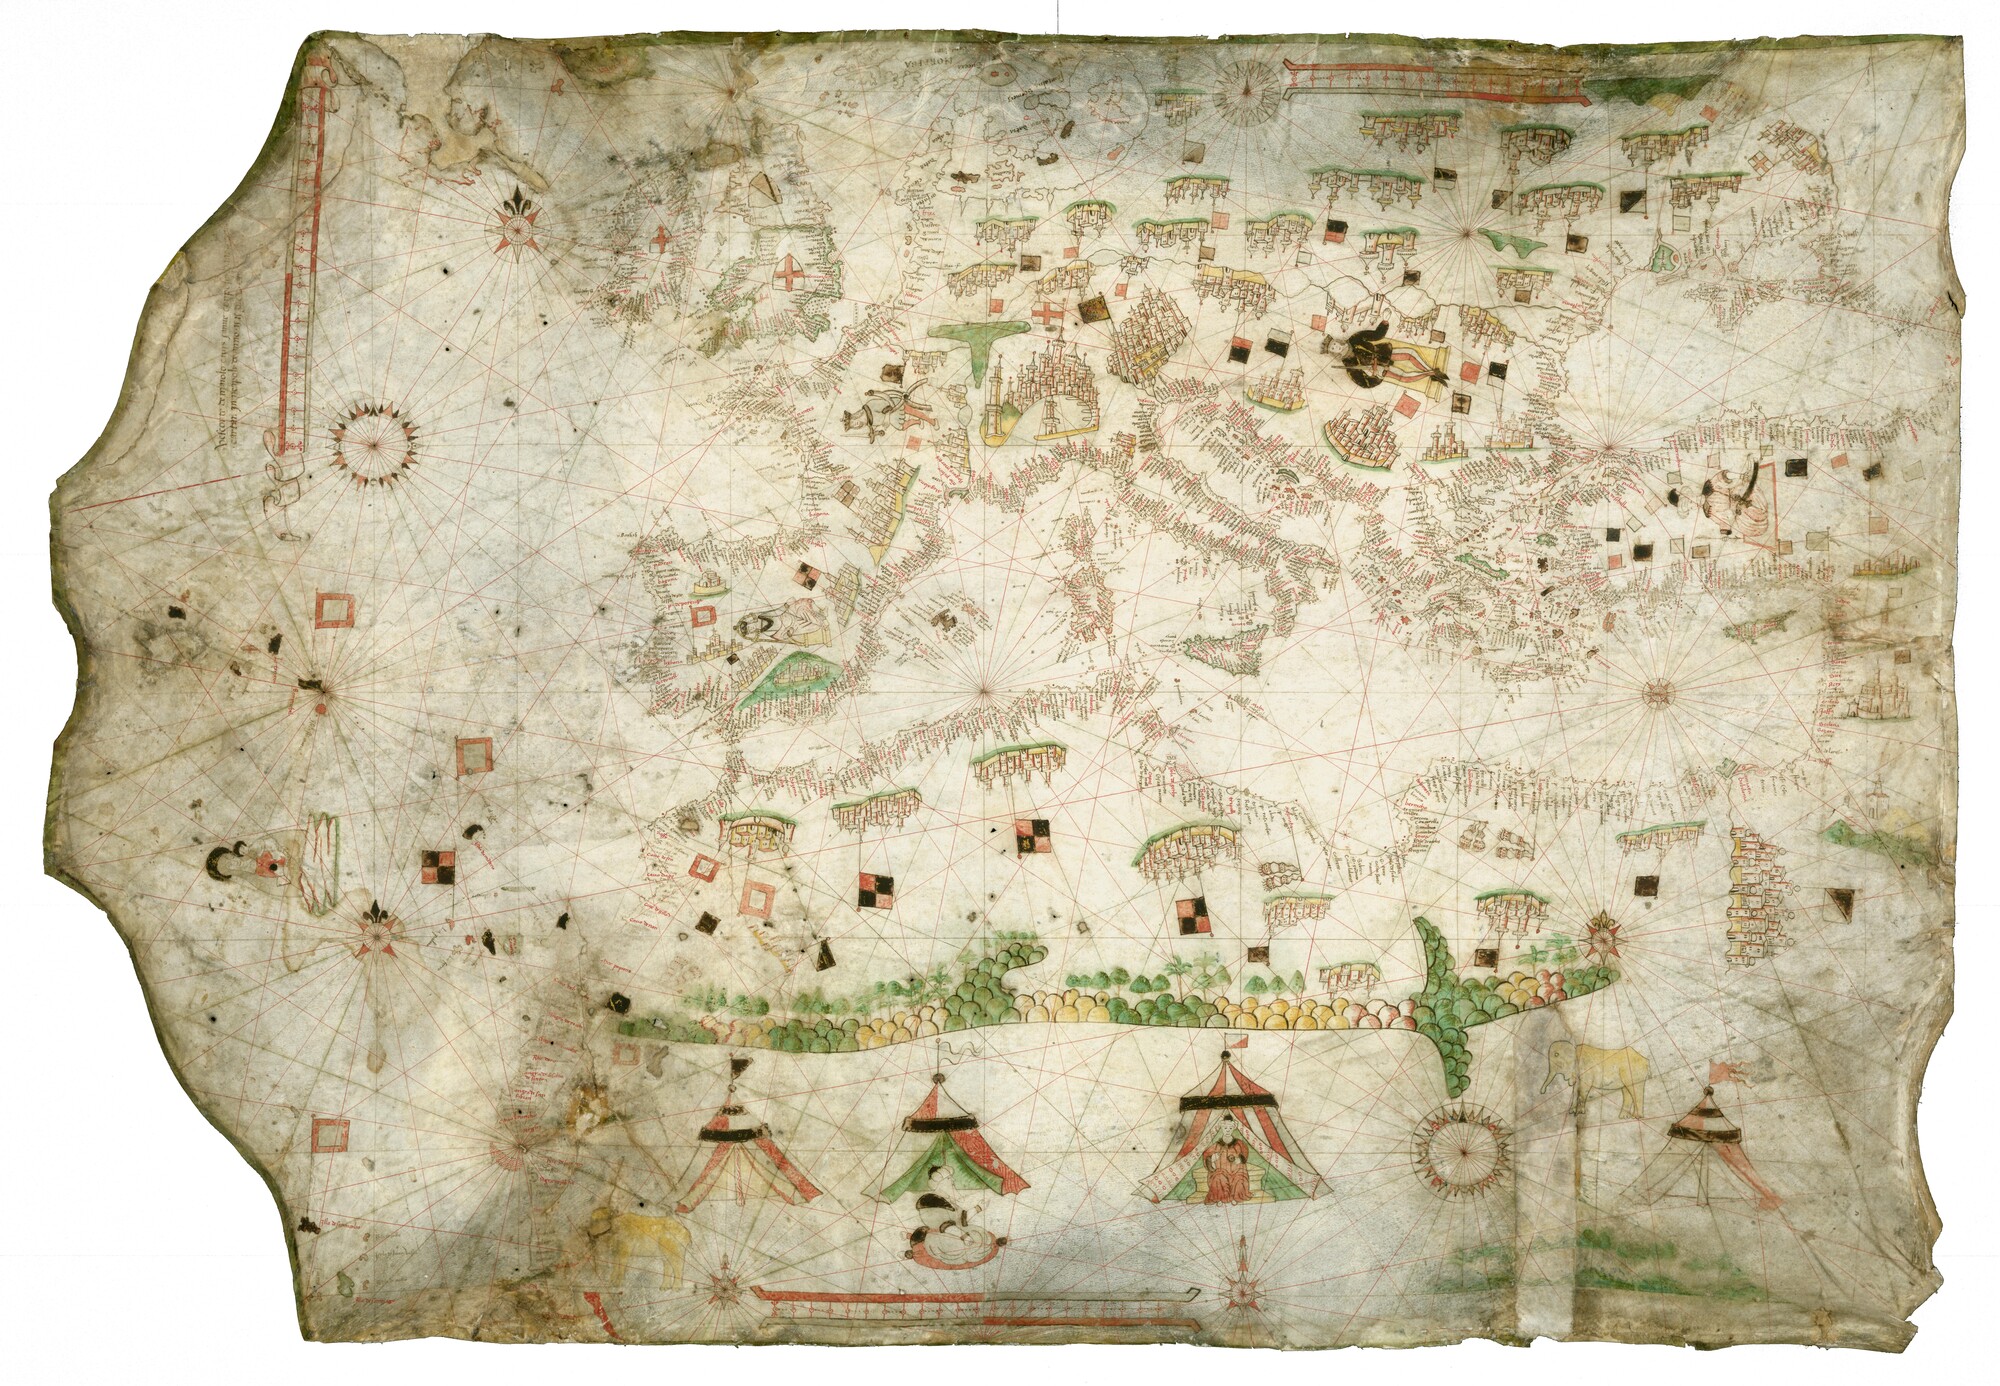 A.0145(065); Zeekaart of portolaan van de Middellandse Zee, door Vesconte de Maggiolo; perkamentkaart